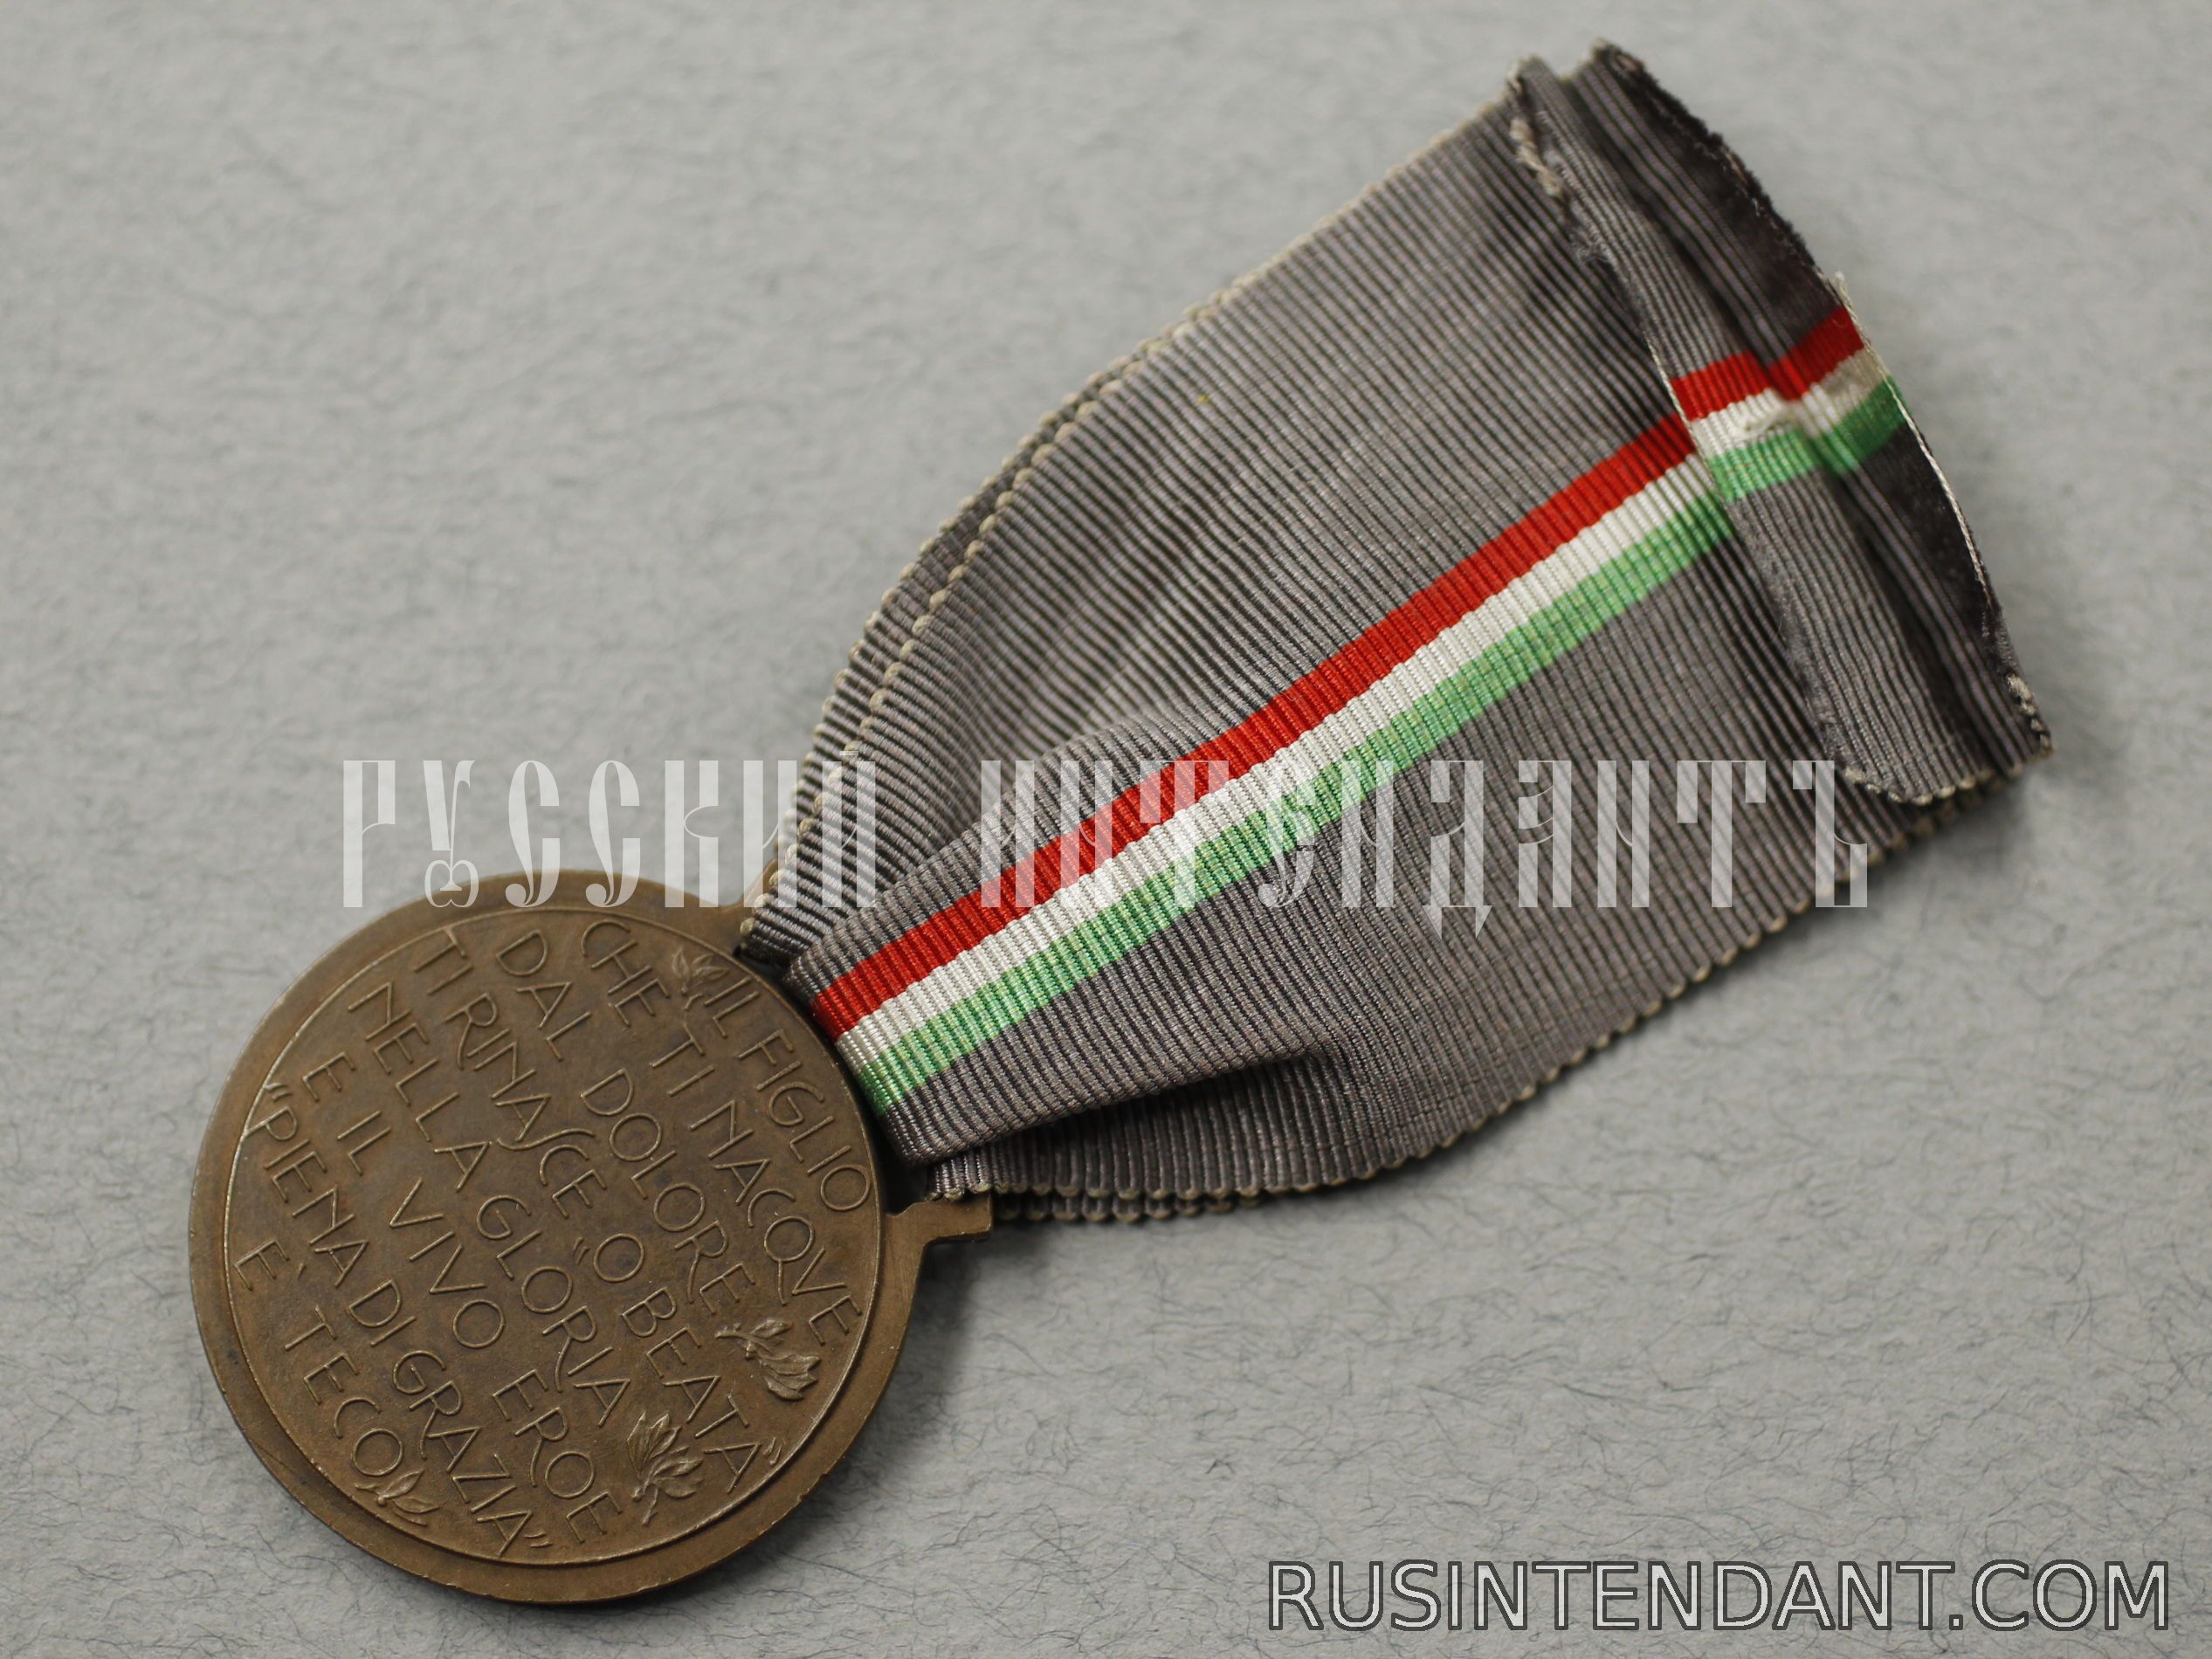 Фото 4: Италия "Медаль Национальной благодарности" 